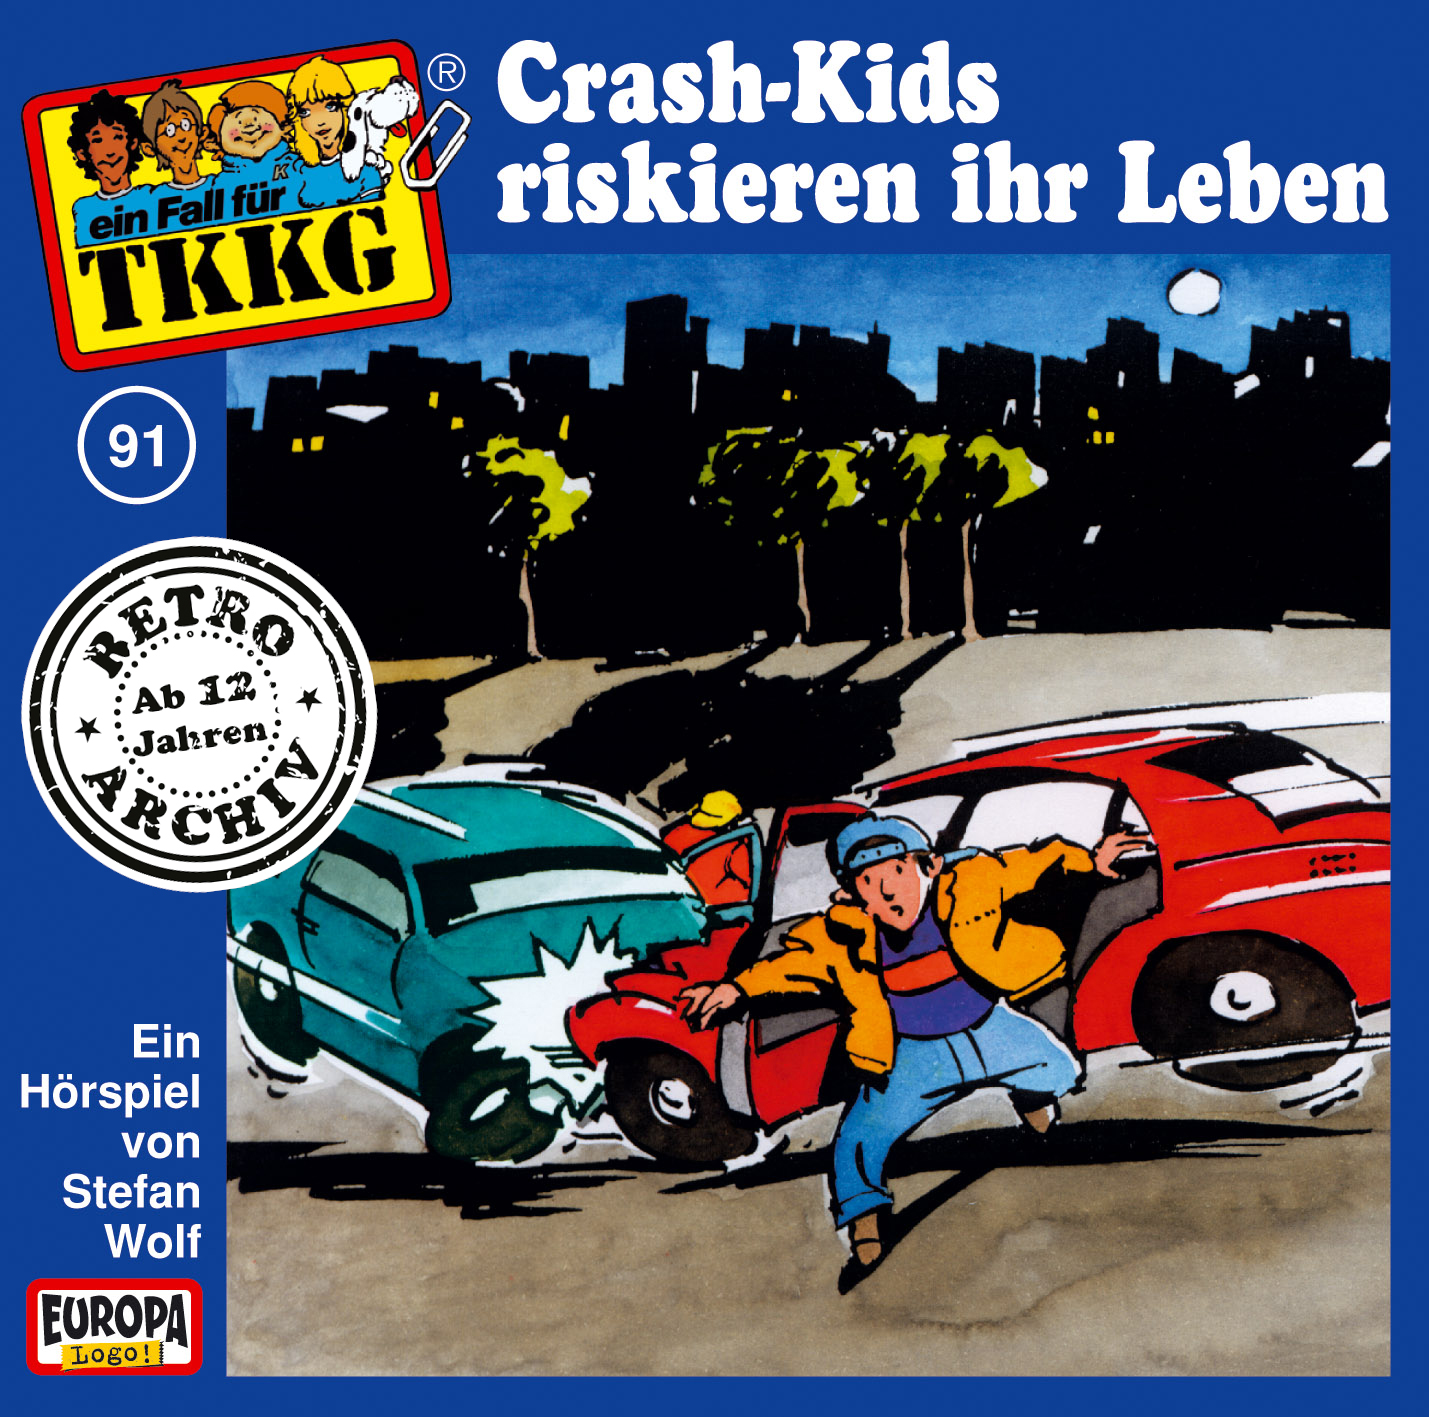 TKKG Retro-Archiv - Crash-Kids riskieren ihr Leben